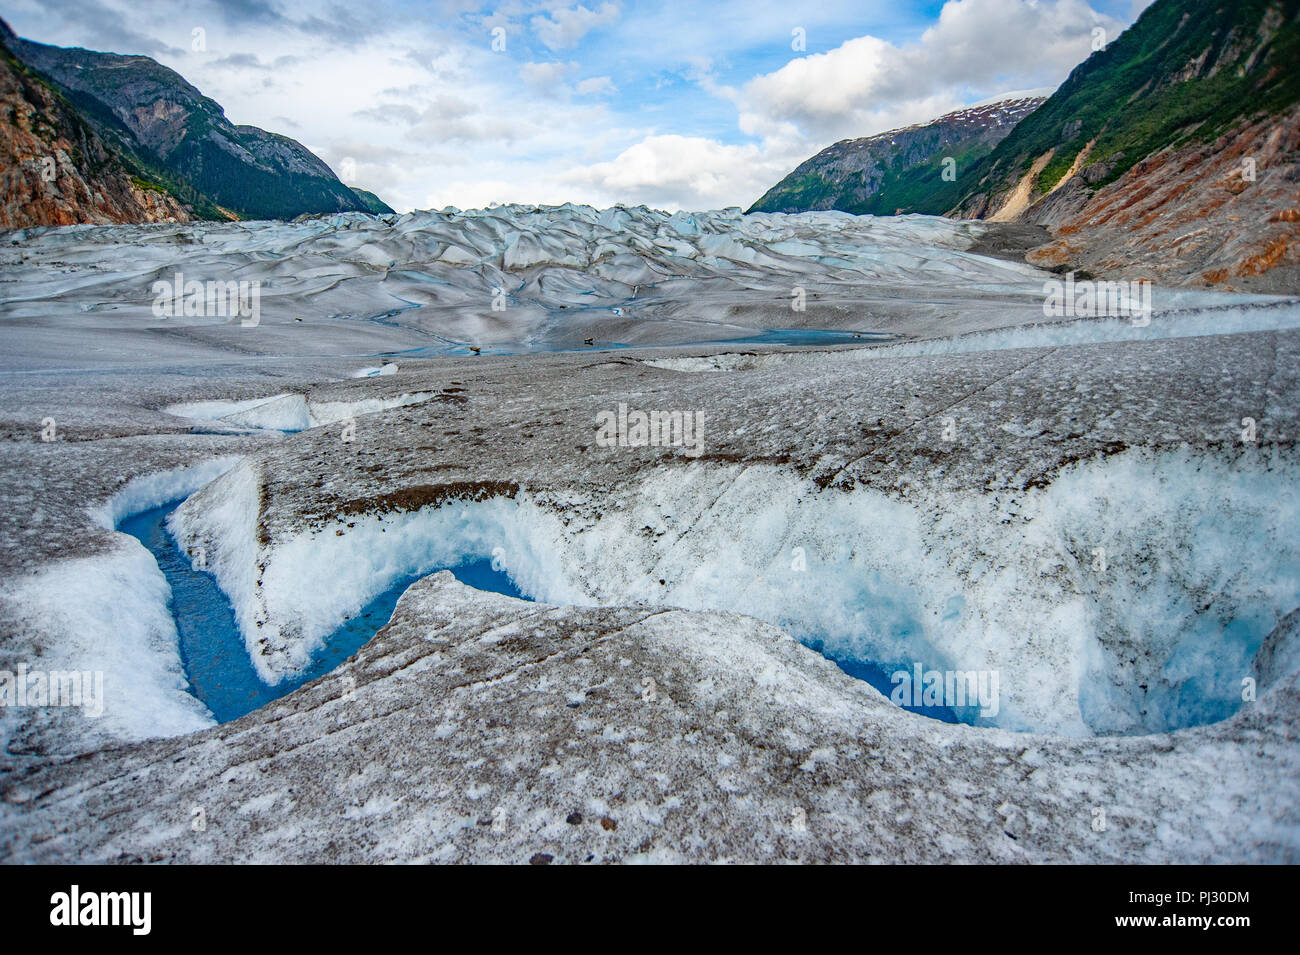 Gletscher Helikopter-tour - Juneau Alaska Kreuzfahrt Schiff Ausflug über die Juneau Icefield Landung auf Gilkey Gletscher - atemberaubend blauen eiszeitliche Schmelzwasser Stockfoto